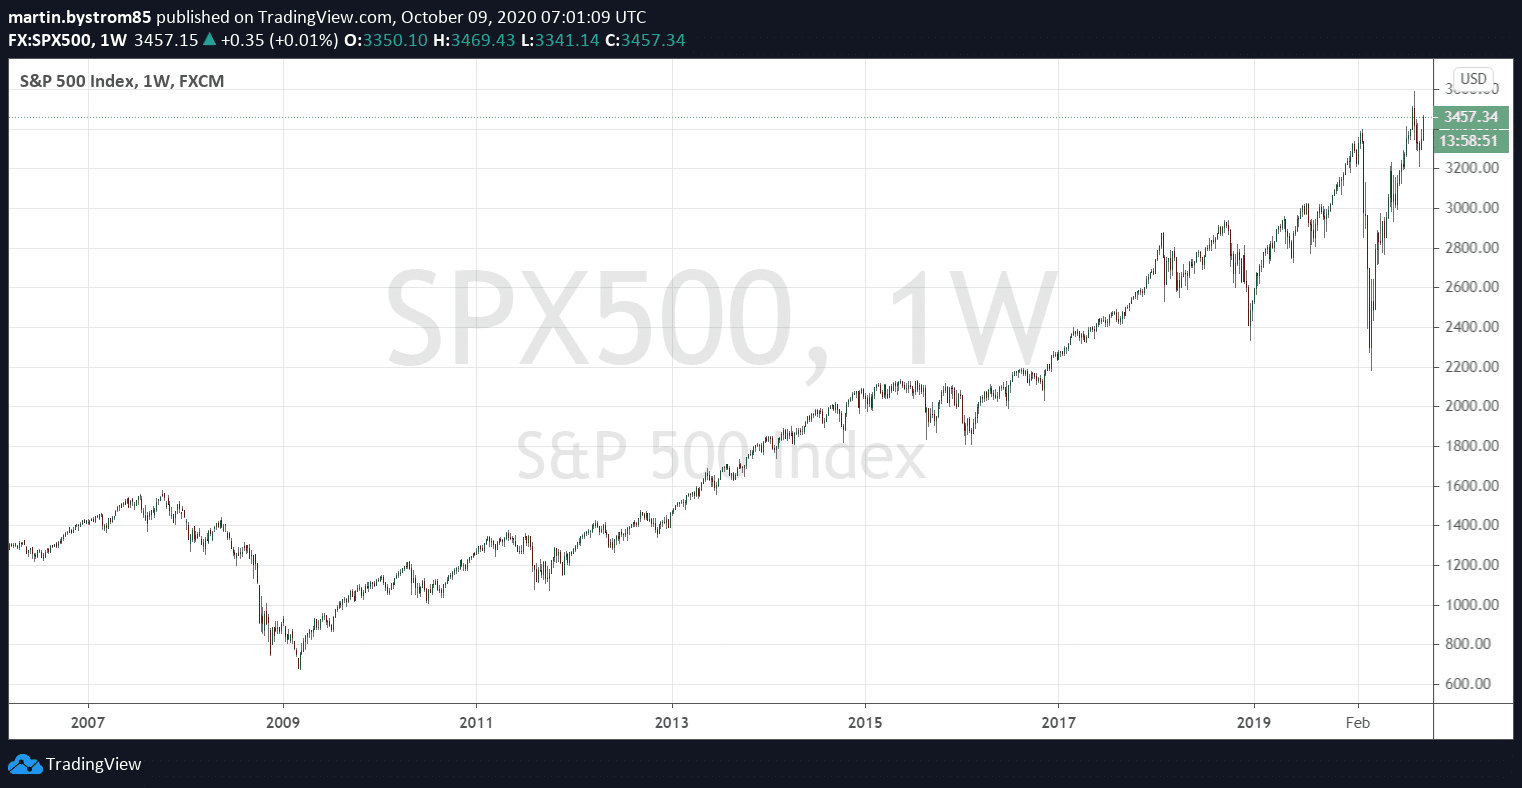 Historisk utveckling av S&P 500, ett sammanvägt index av de 500 största bolagen noterade i USA.